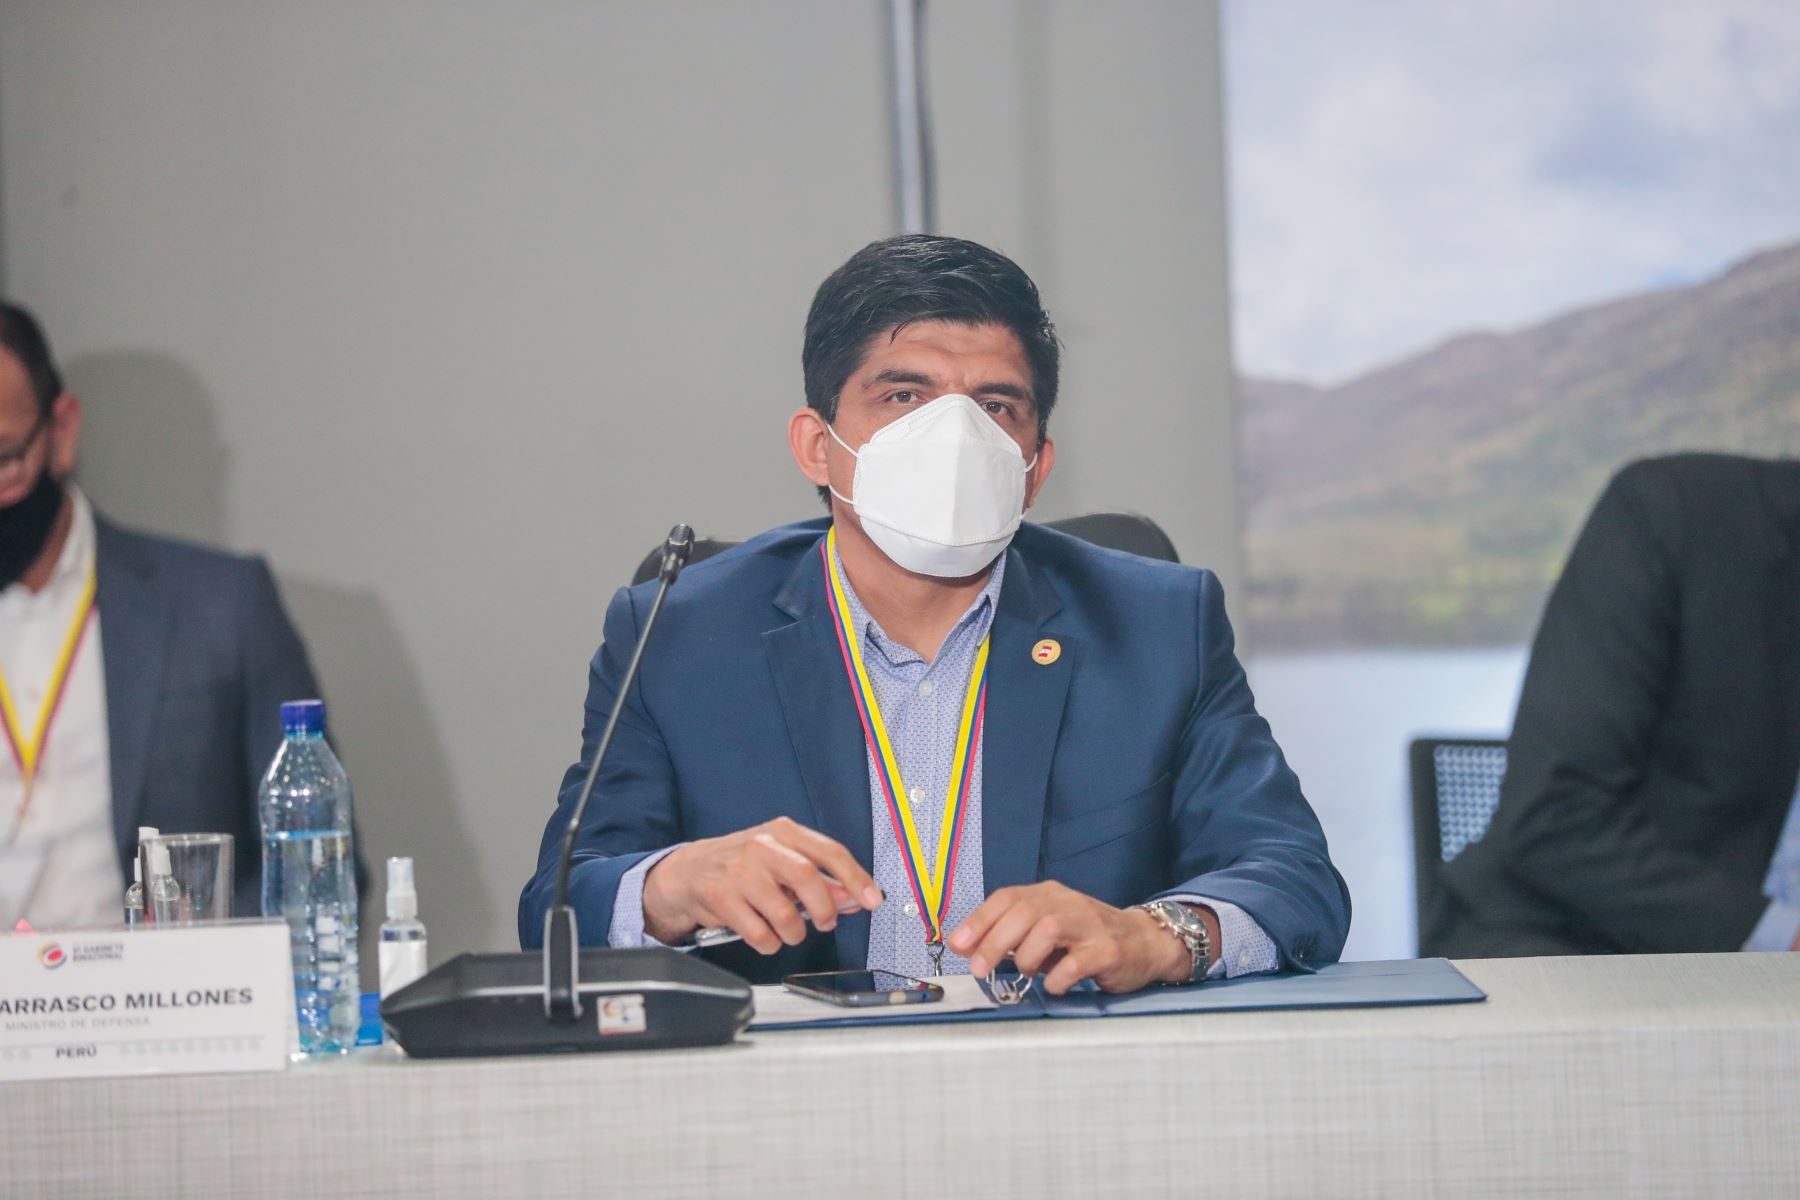 Ministro del Defensa Juan Manuel Carrasco Millones, participó en el Encuentro Presidencial y VI Gabinete Binacional Perú-Colombia.
Foto: ANDINA/Presidencia Perú